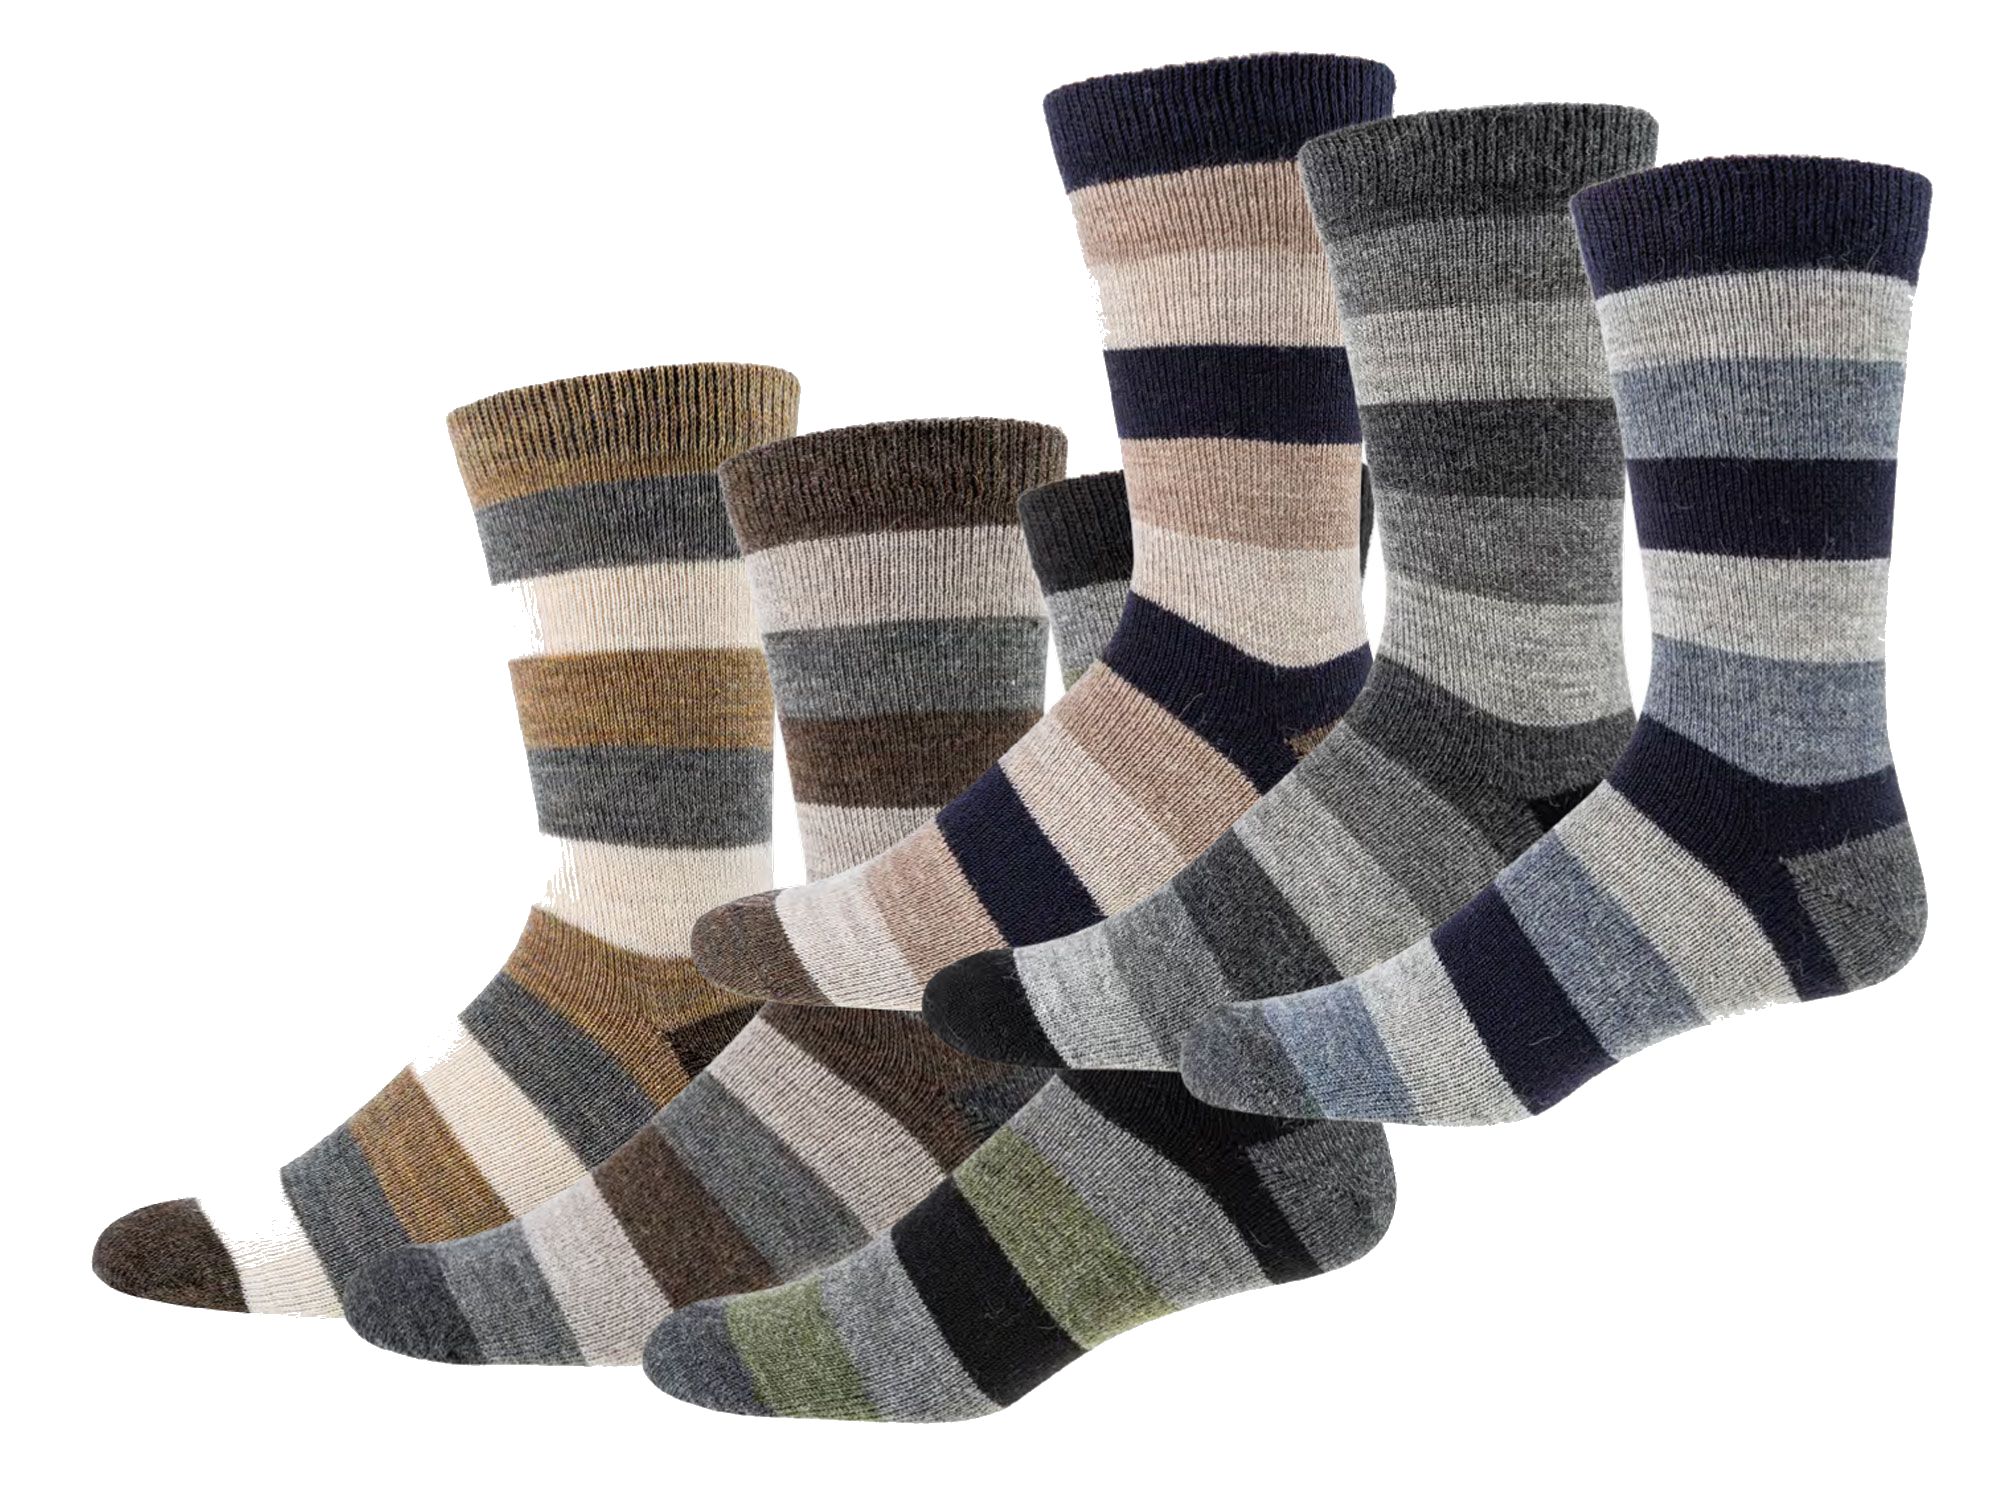 Naturfarben-Socken mit Wolle und Alpaka  3 Paar